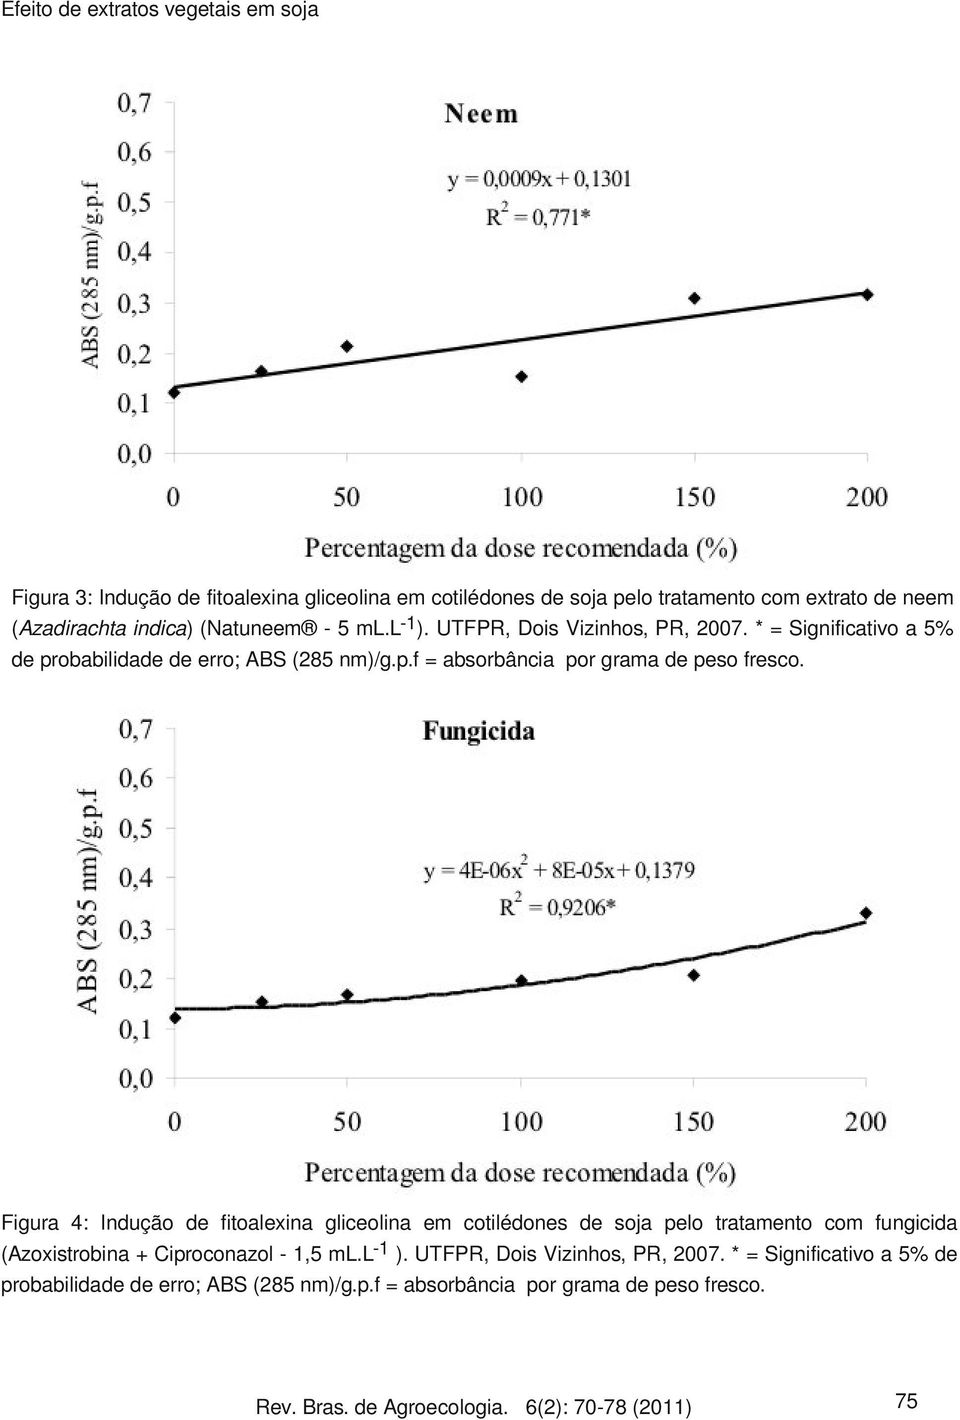 Figura 4: Indução de fitoalexina gliceolina em cotilédones de soja pelo tratamento com fungicida (Azoxistrobina + Ciproconazol - 1,5 ml.l-1 ).